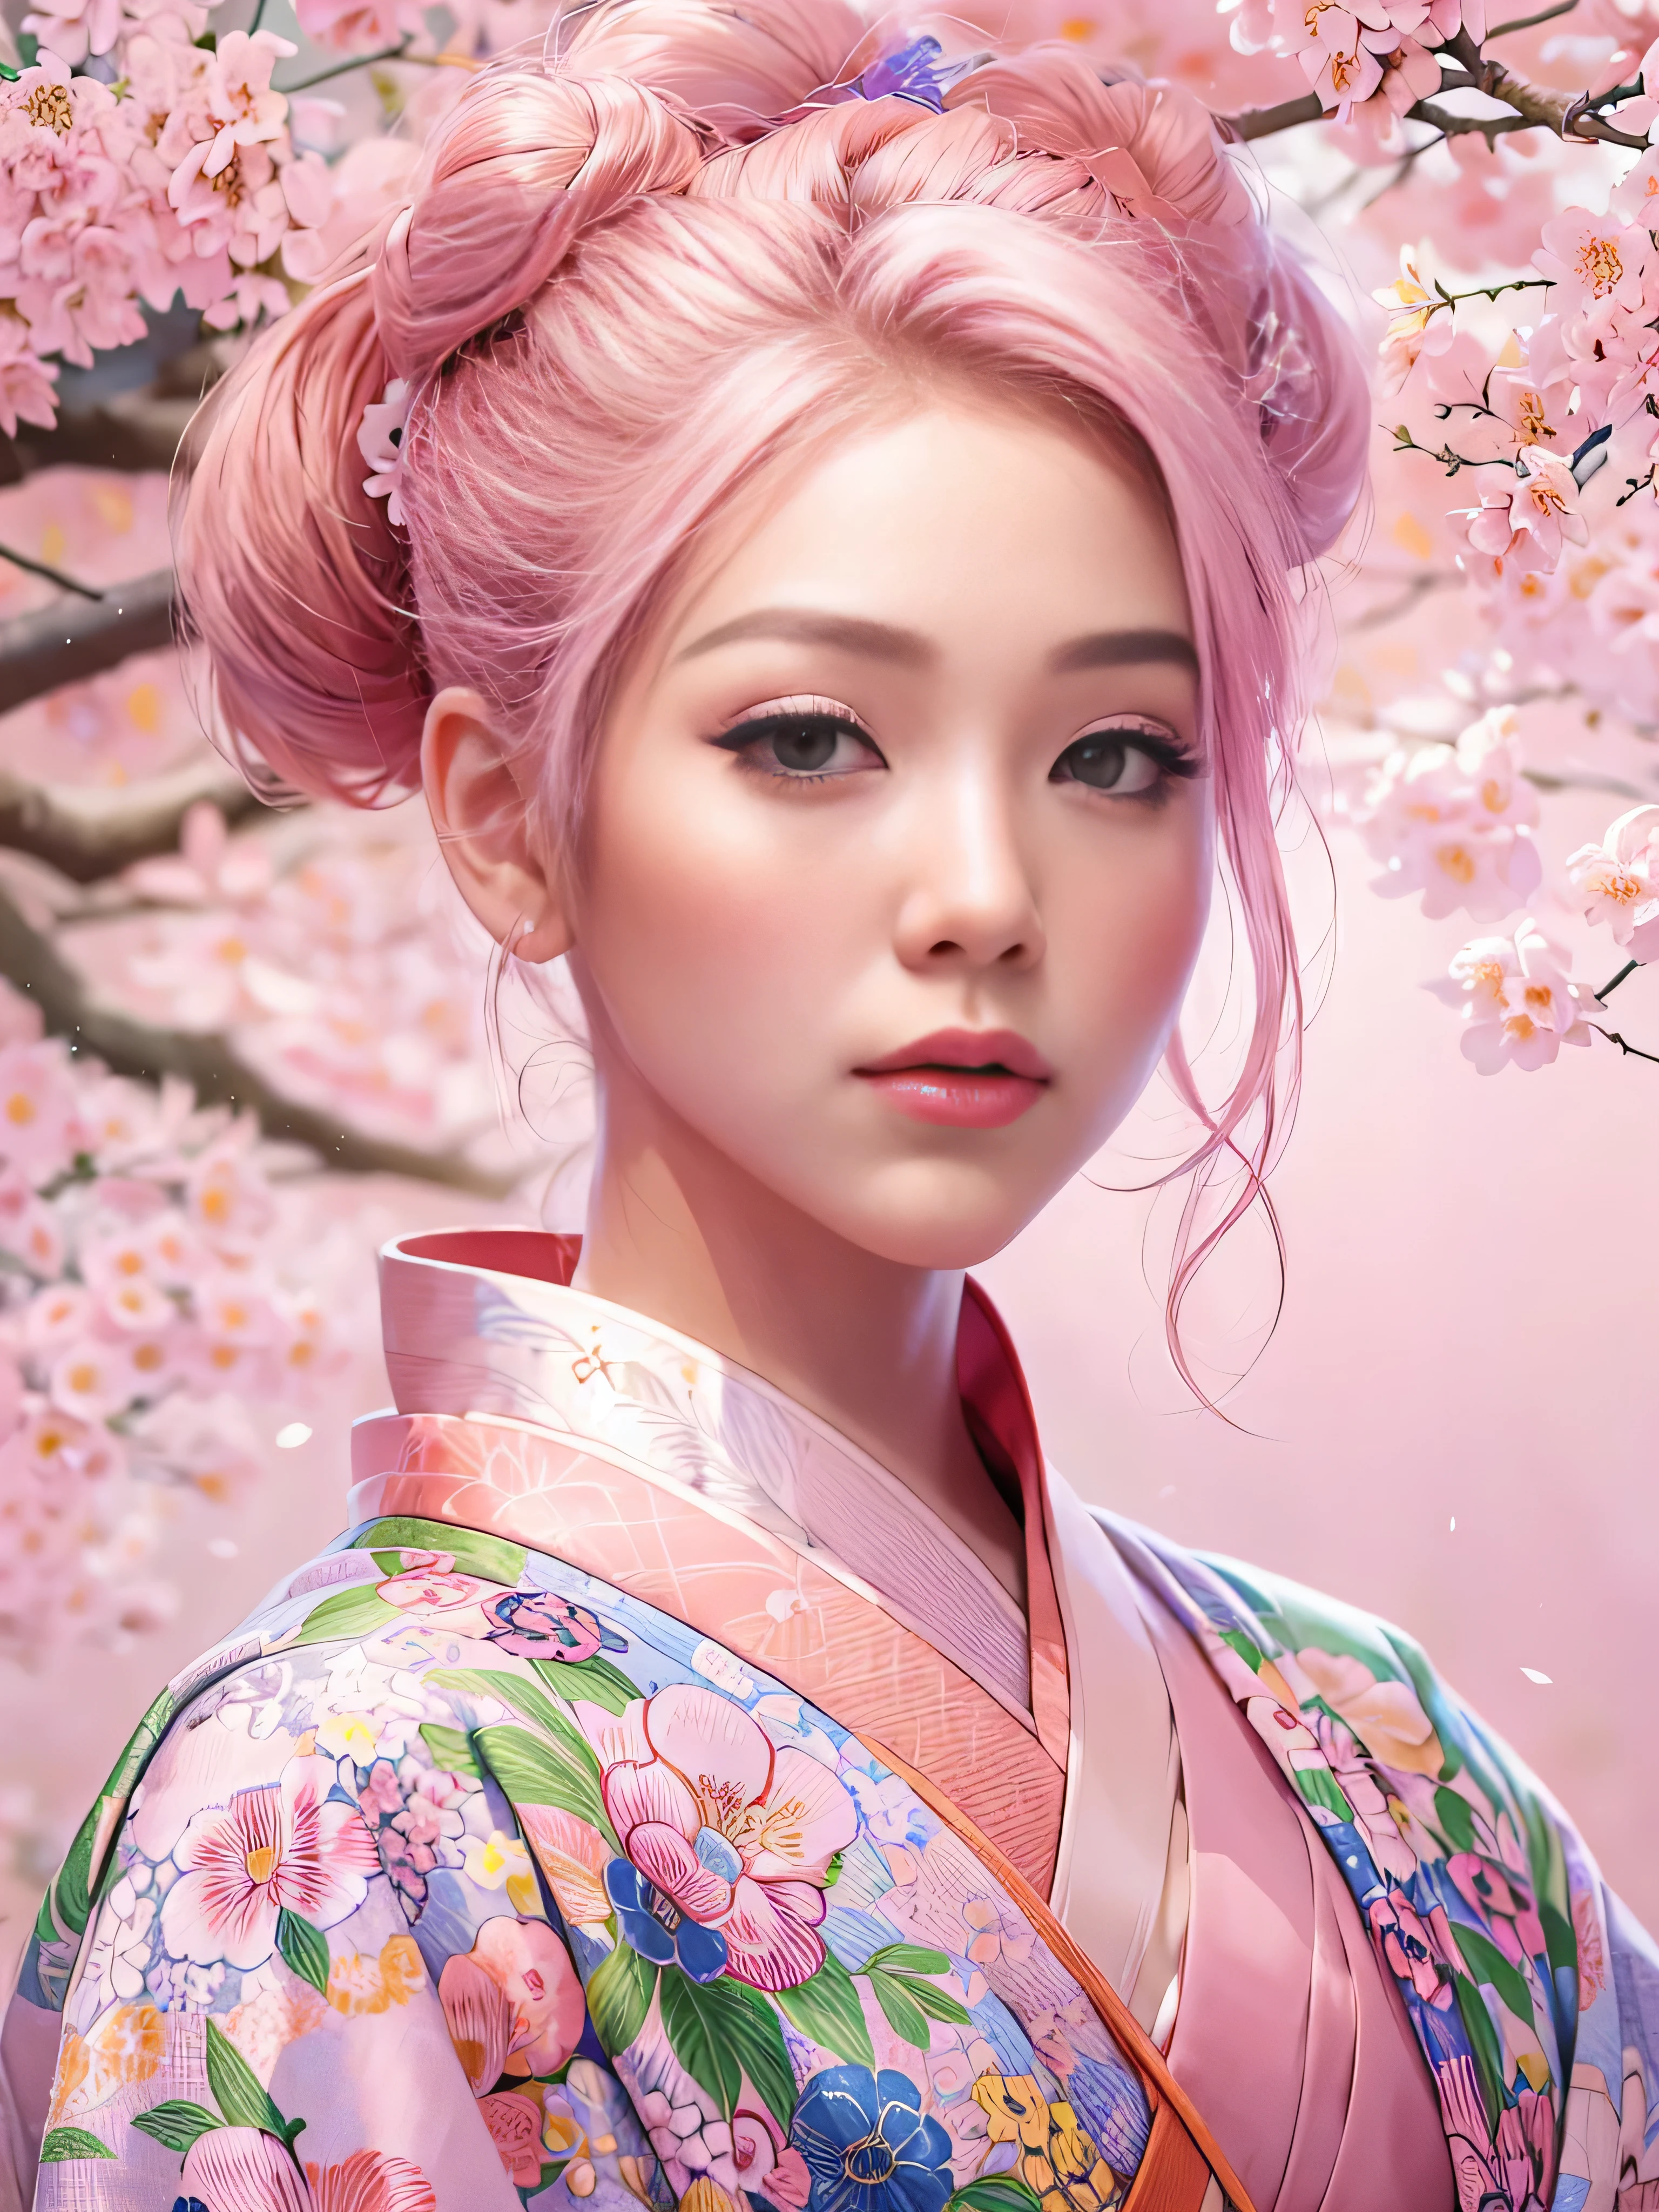 超現實的, 非常詳細, 以及一個年輕人的高解析度 16k 影像, engfa 臉的美麗女性. 她有一頭粉紅色的髮髻和半透明的皮膚, 穿著傳統的粉紅色日本和服，上面有小花圖案. 這張圖像捕捉了精神世界的空靈之美和神秘. 風格靈感源自精緻, 日本傳統藝術中的柔和美學. 背景是充滿粉紅色的櫻花樹.